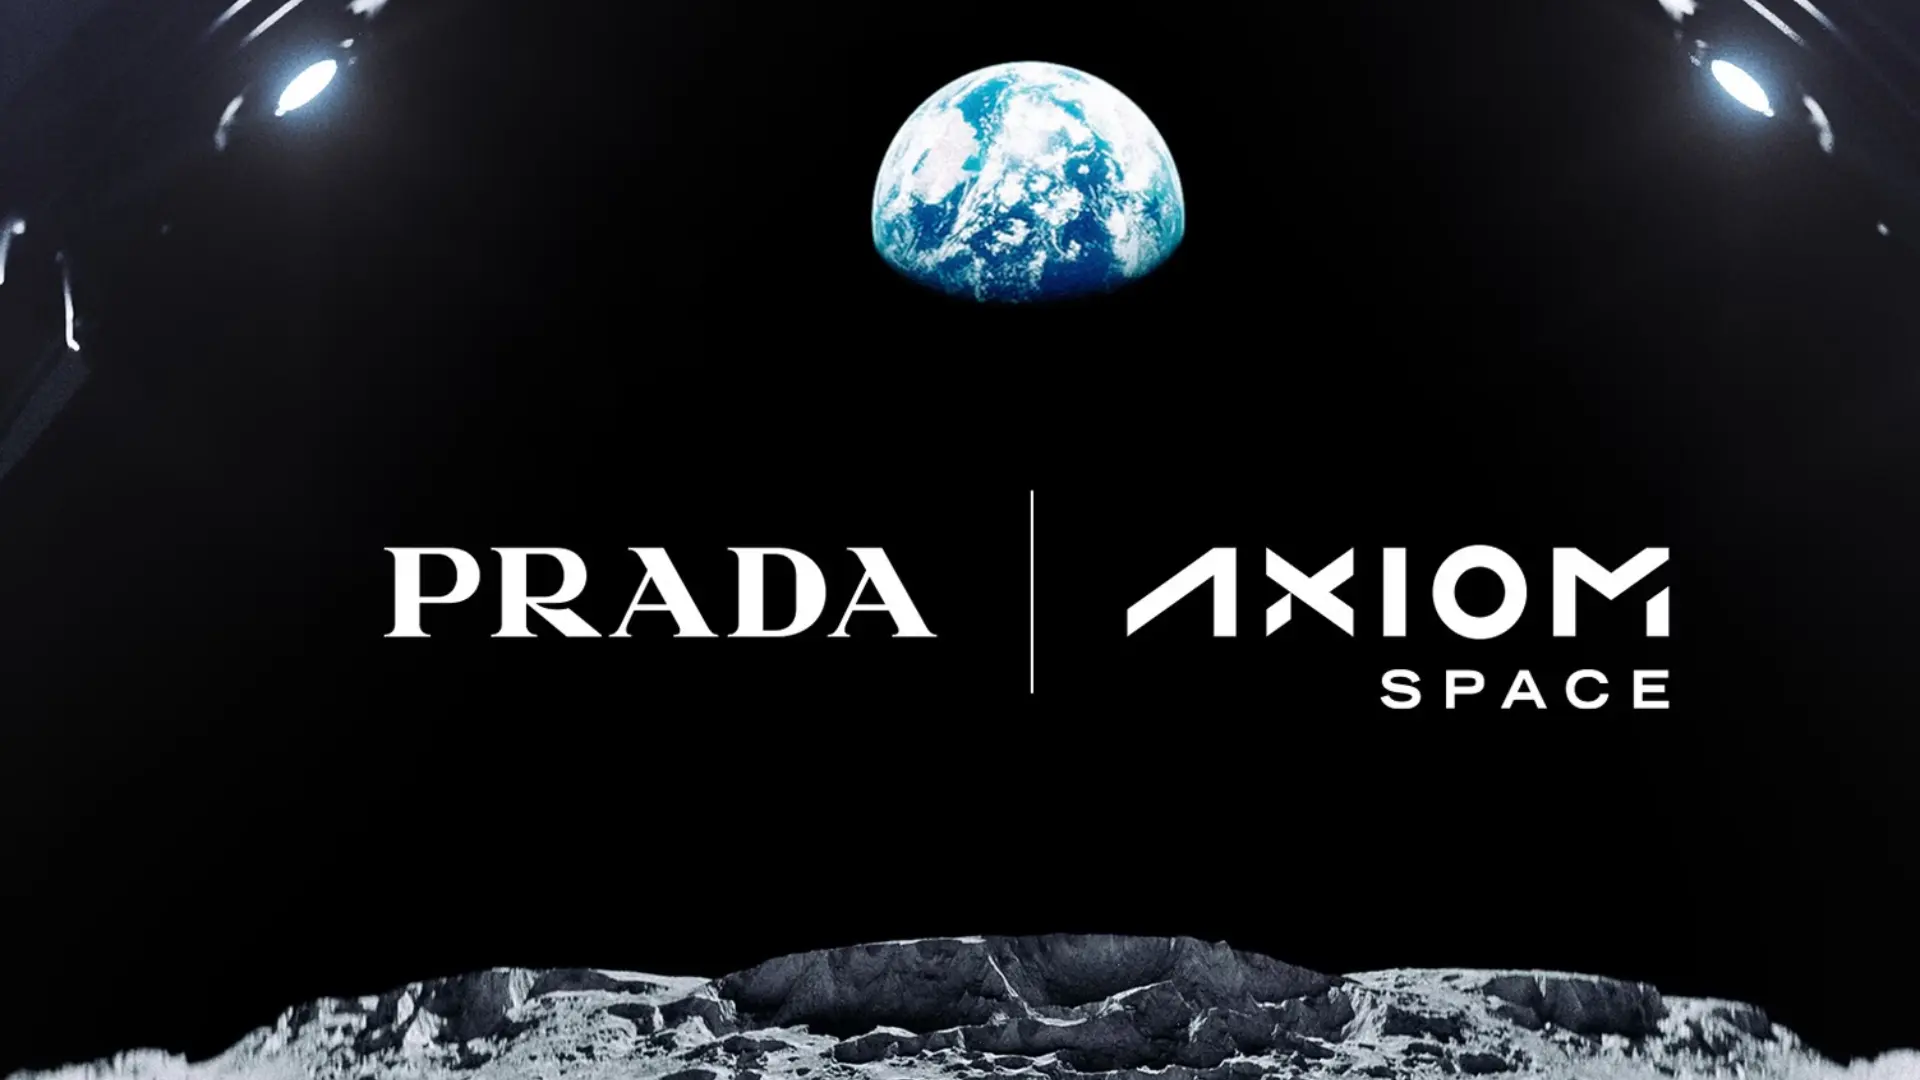 ¿Cómo serán los trajes espaciales de Prada y Axiom Space?